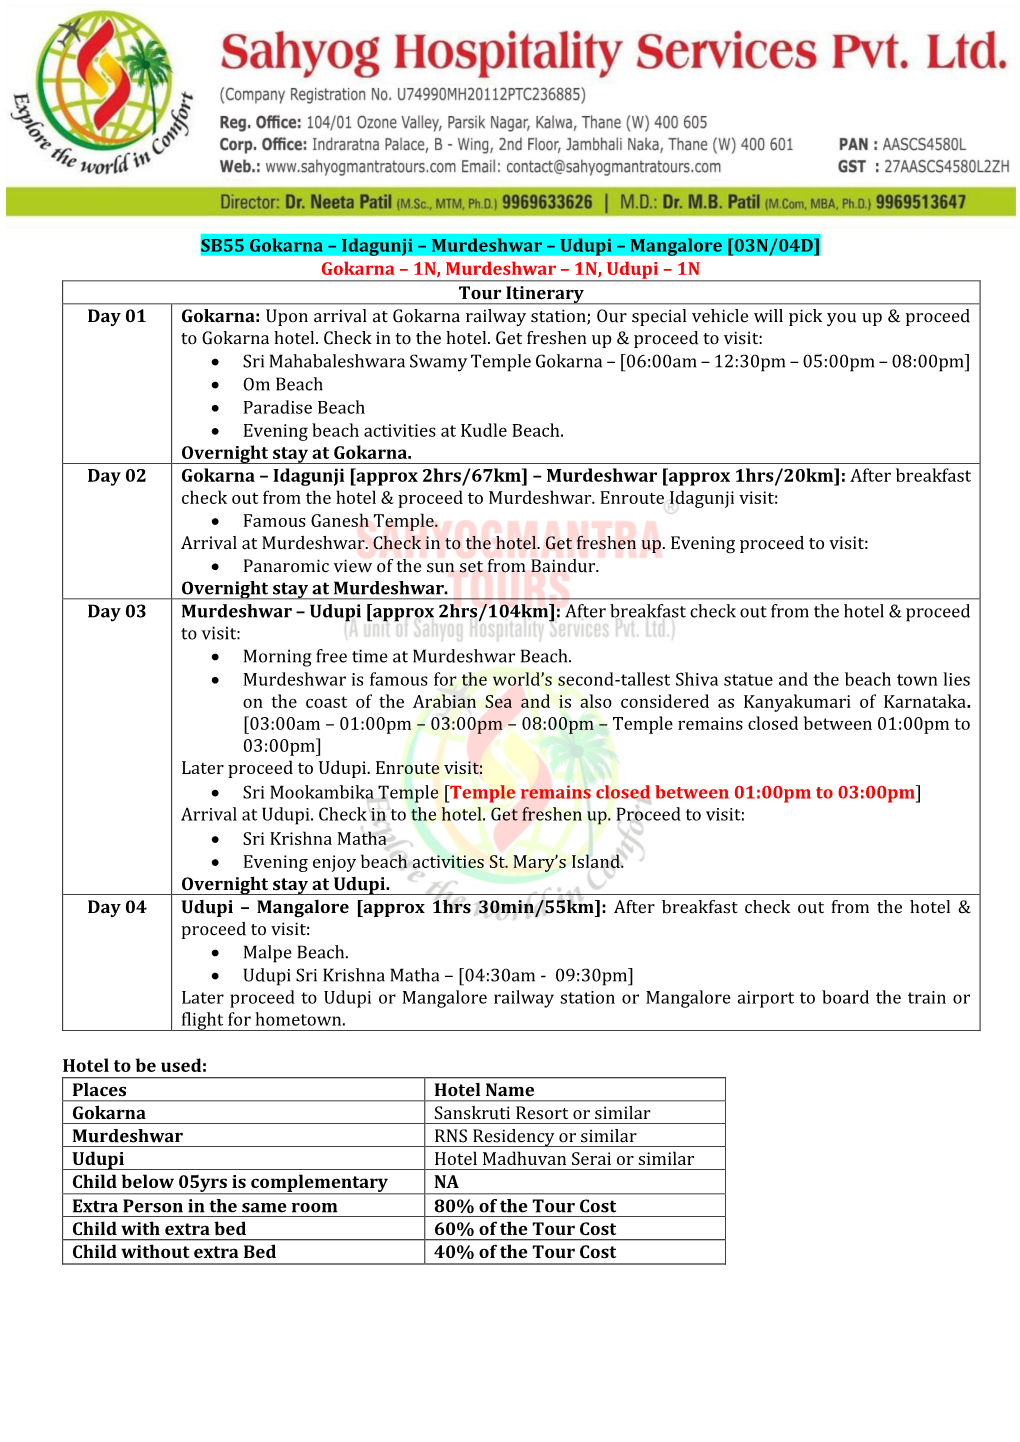 SB55 Gokarna – Idagunji – Murdeshwar – Udupi – Mangalore